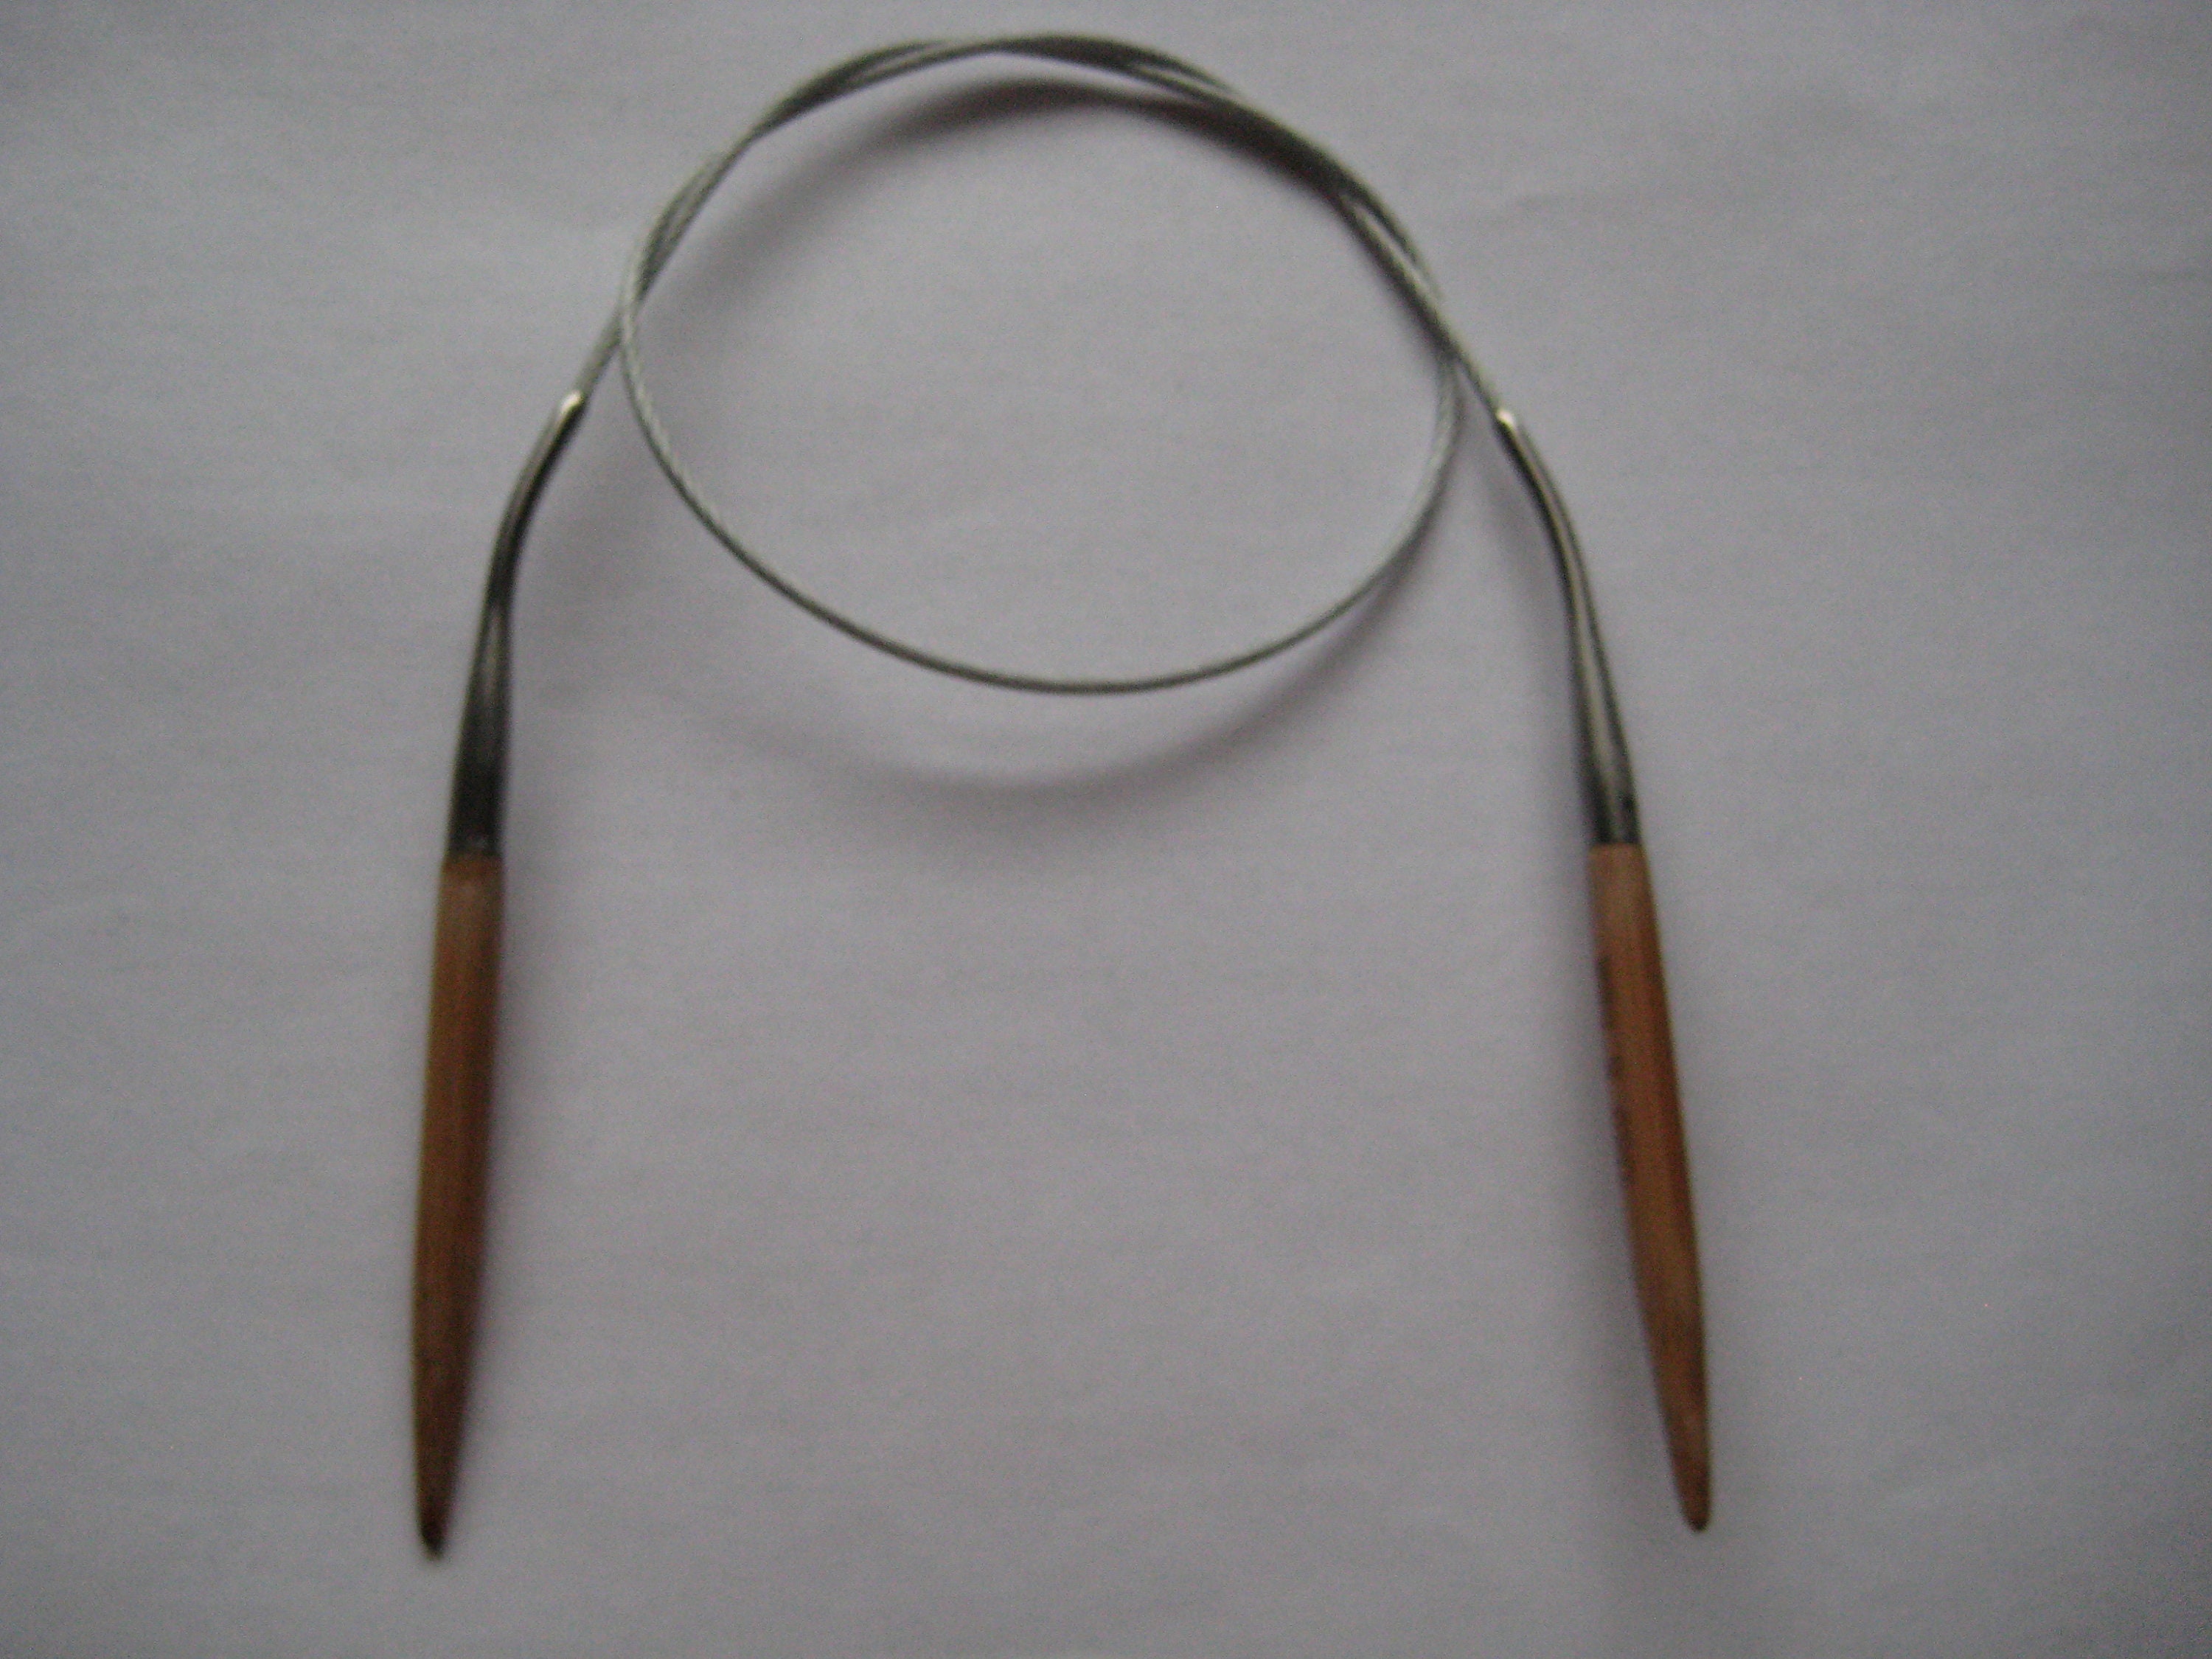 LYKKE 6 15cm DPN Set US6 to 13 Double Pointed Knitting Needle Set BLUSH 